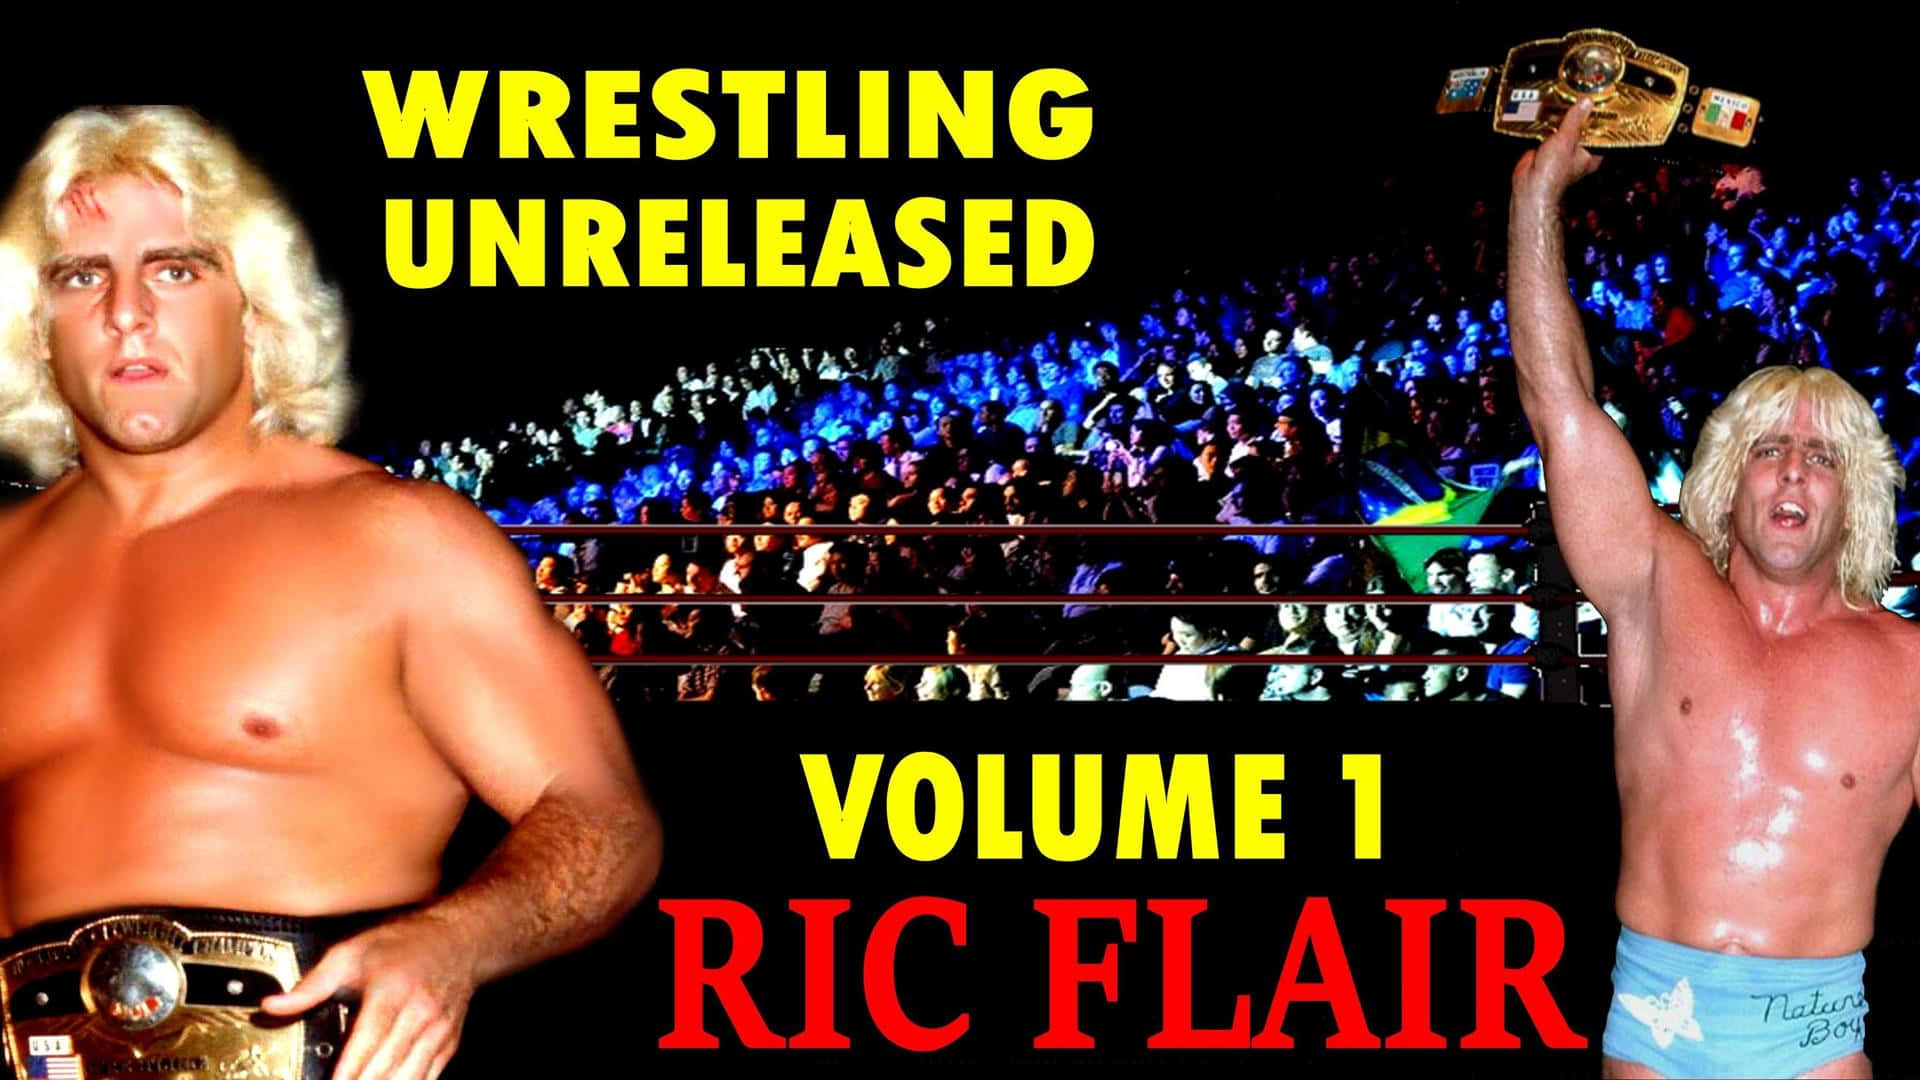 Ric Flair Unreleased Matches kan ses på skærmen. Wallpaper